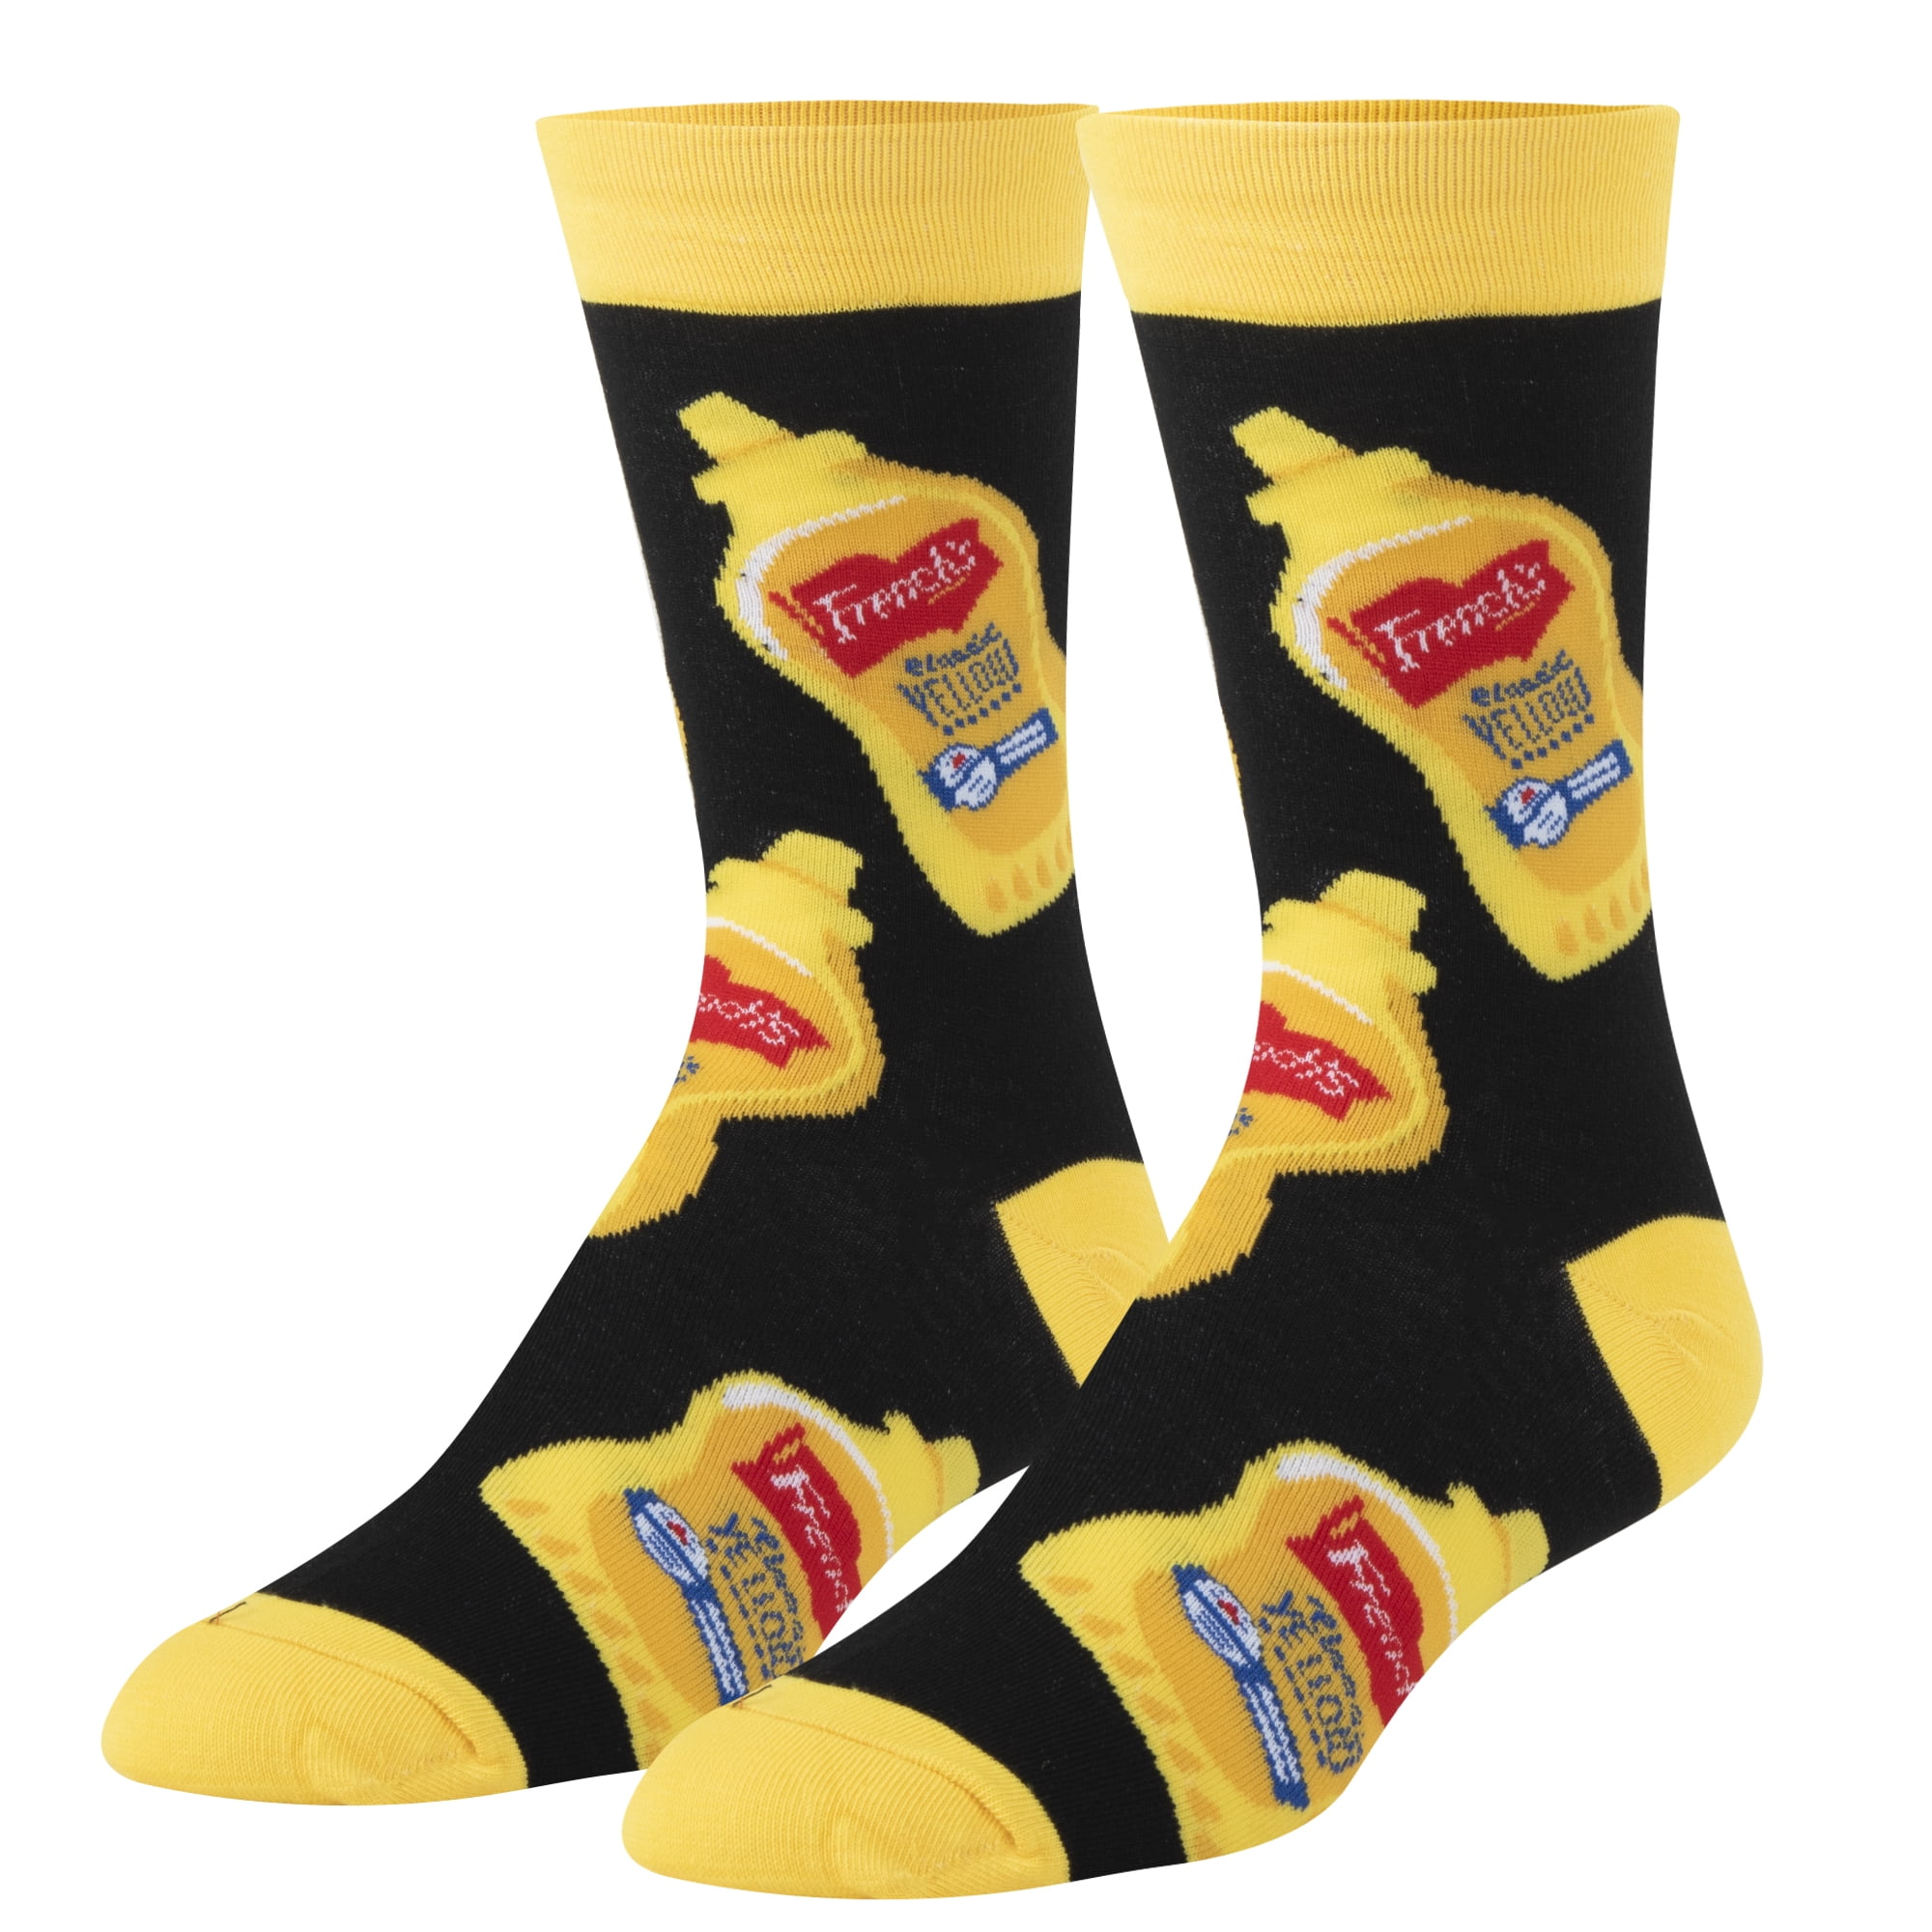 Novelty And Interesting Socks For Men And Women